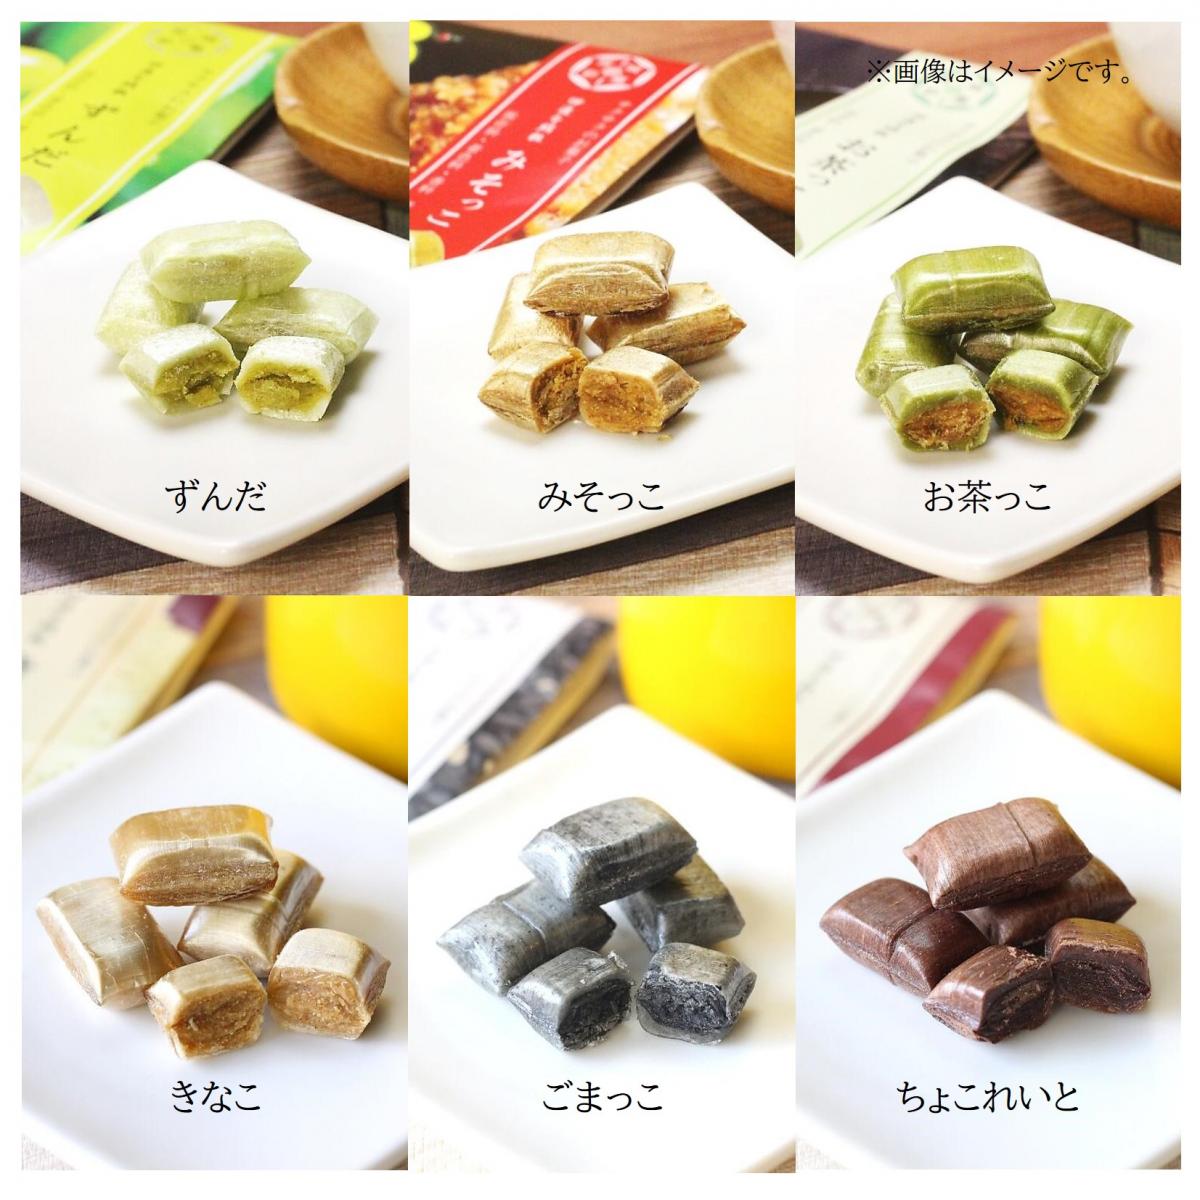 【モノバザール用】宮城のお菓子　6種類の味・20袋詰め合せ(合計120袋)サムネイル